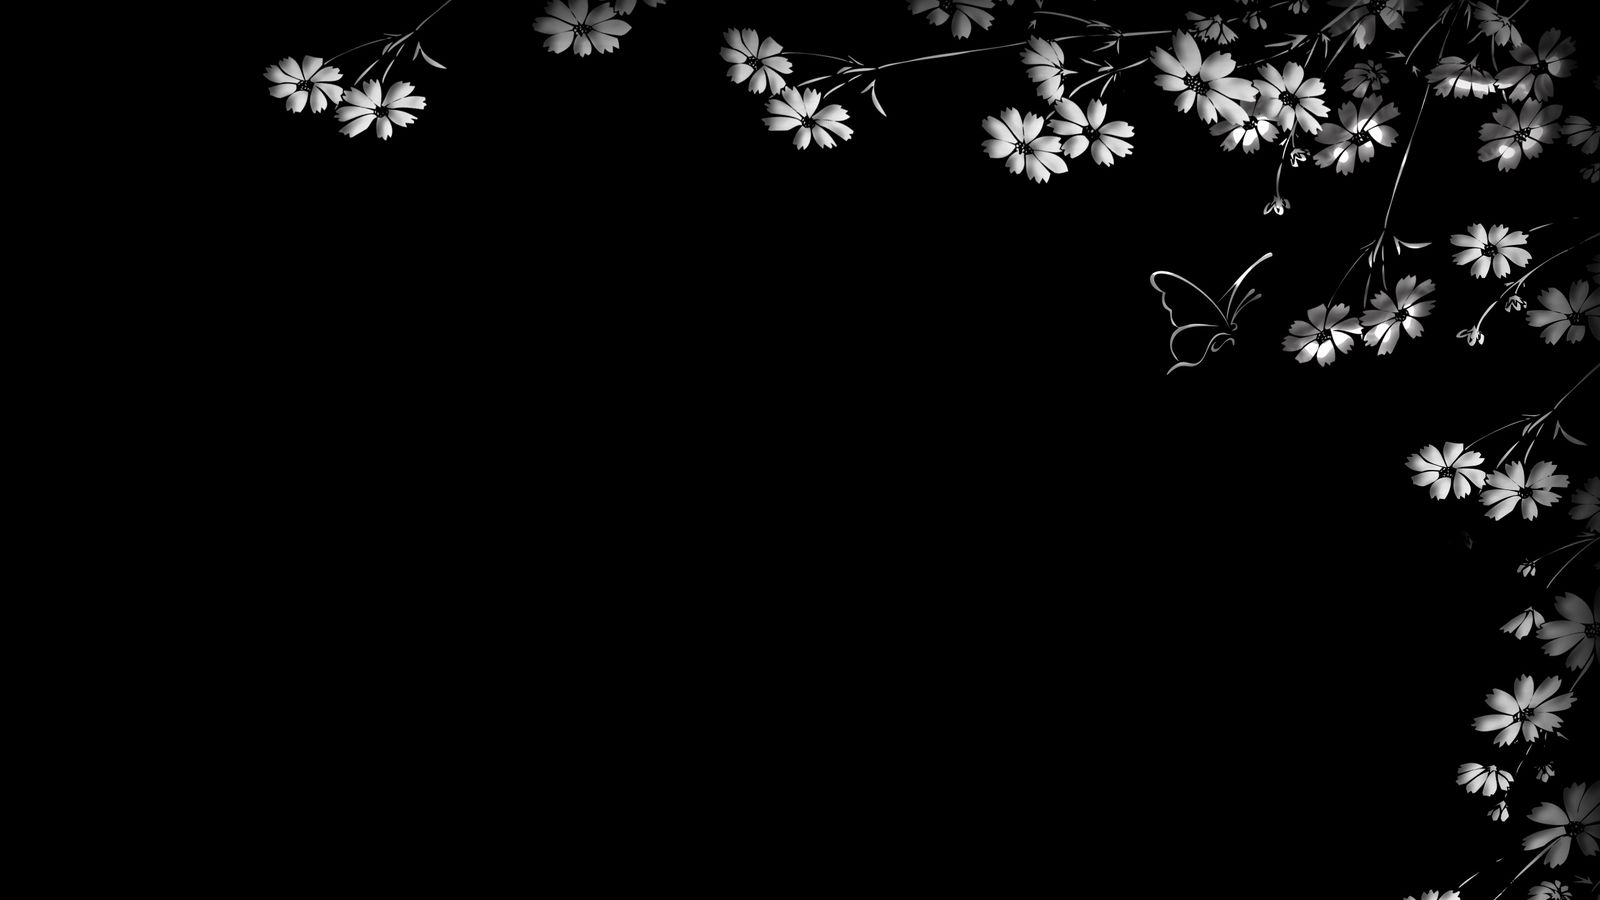 Họa tiết hoa bướm trên nền đen tạo nên một hiệu ứng nổi bật với sự pha trộn giữa sắc đen và các hoa và bướm tươi tắn. Đây là một bức ảnh hoàn hảo để trang trí cho mỗi dịp khác nhau. Hãy xem ngay tại đây để bắt đầu thấy sự phong phú của họa tiết hoa bướm.